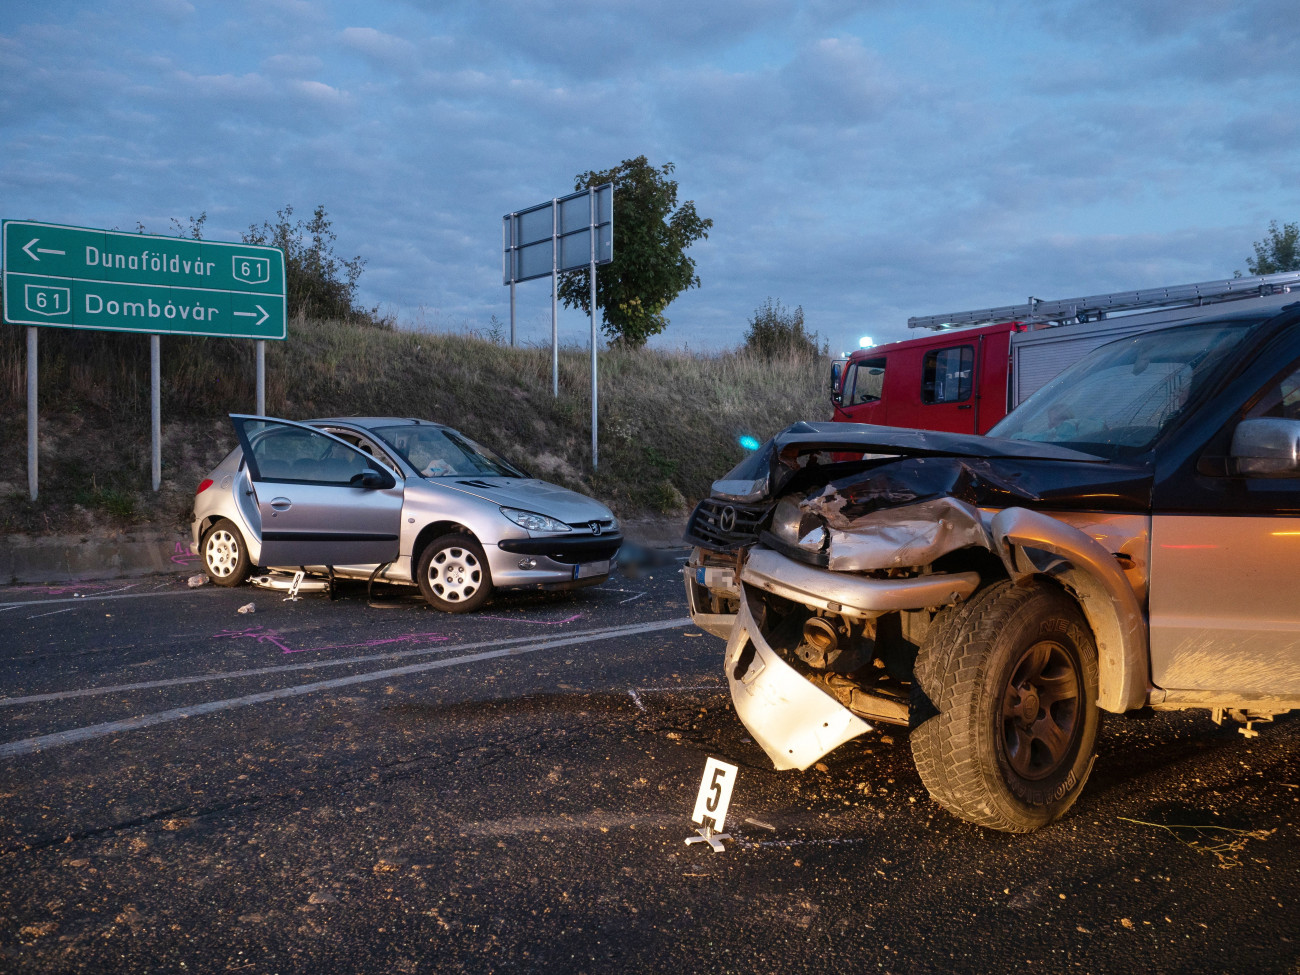 Összetört autók, miután összeütköztek a Tolna megyei Nagykónyinál, a 61-es főút és a 651-es út kereszteződésében 2021. szeptember 4-én. A balesetben egy ember életét vesztette.